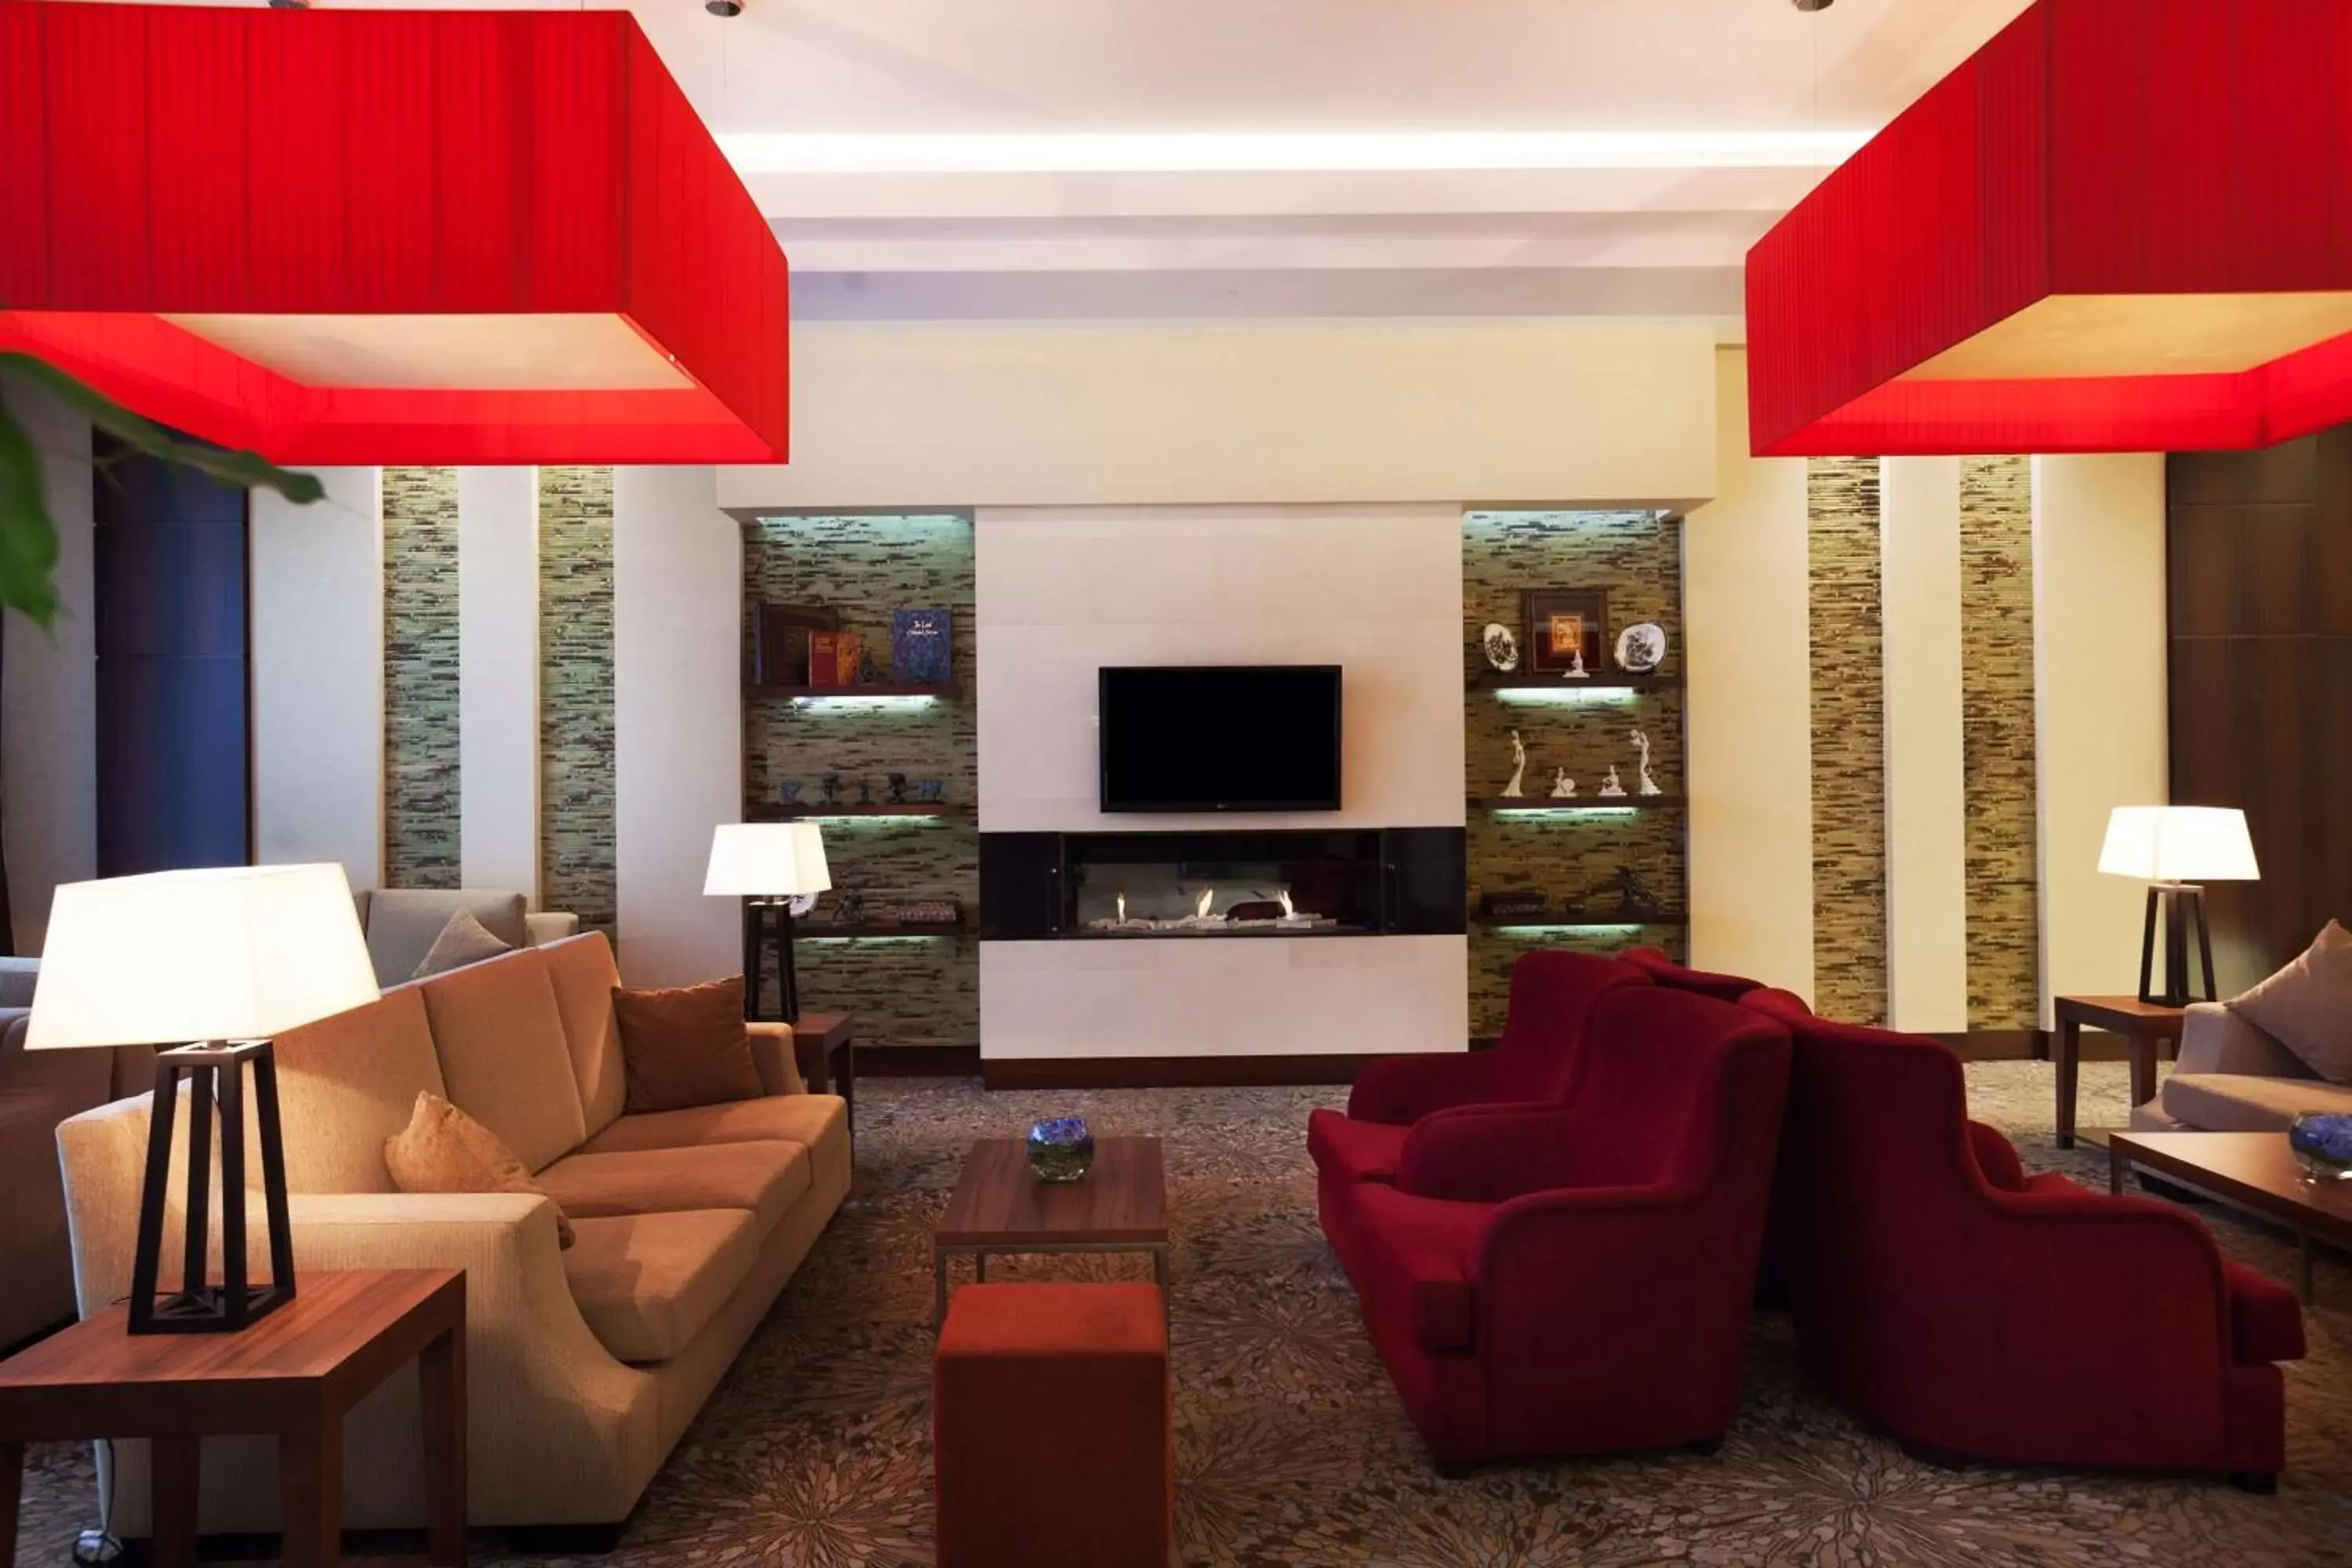 Lobby or reception, Seating Area in Hilton Garden Inn Astana